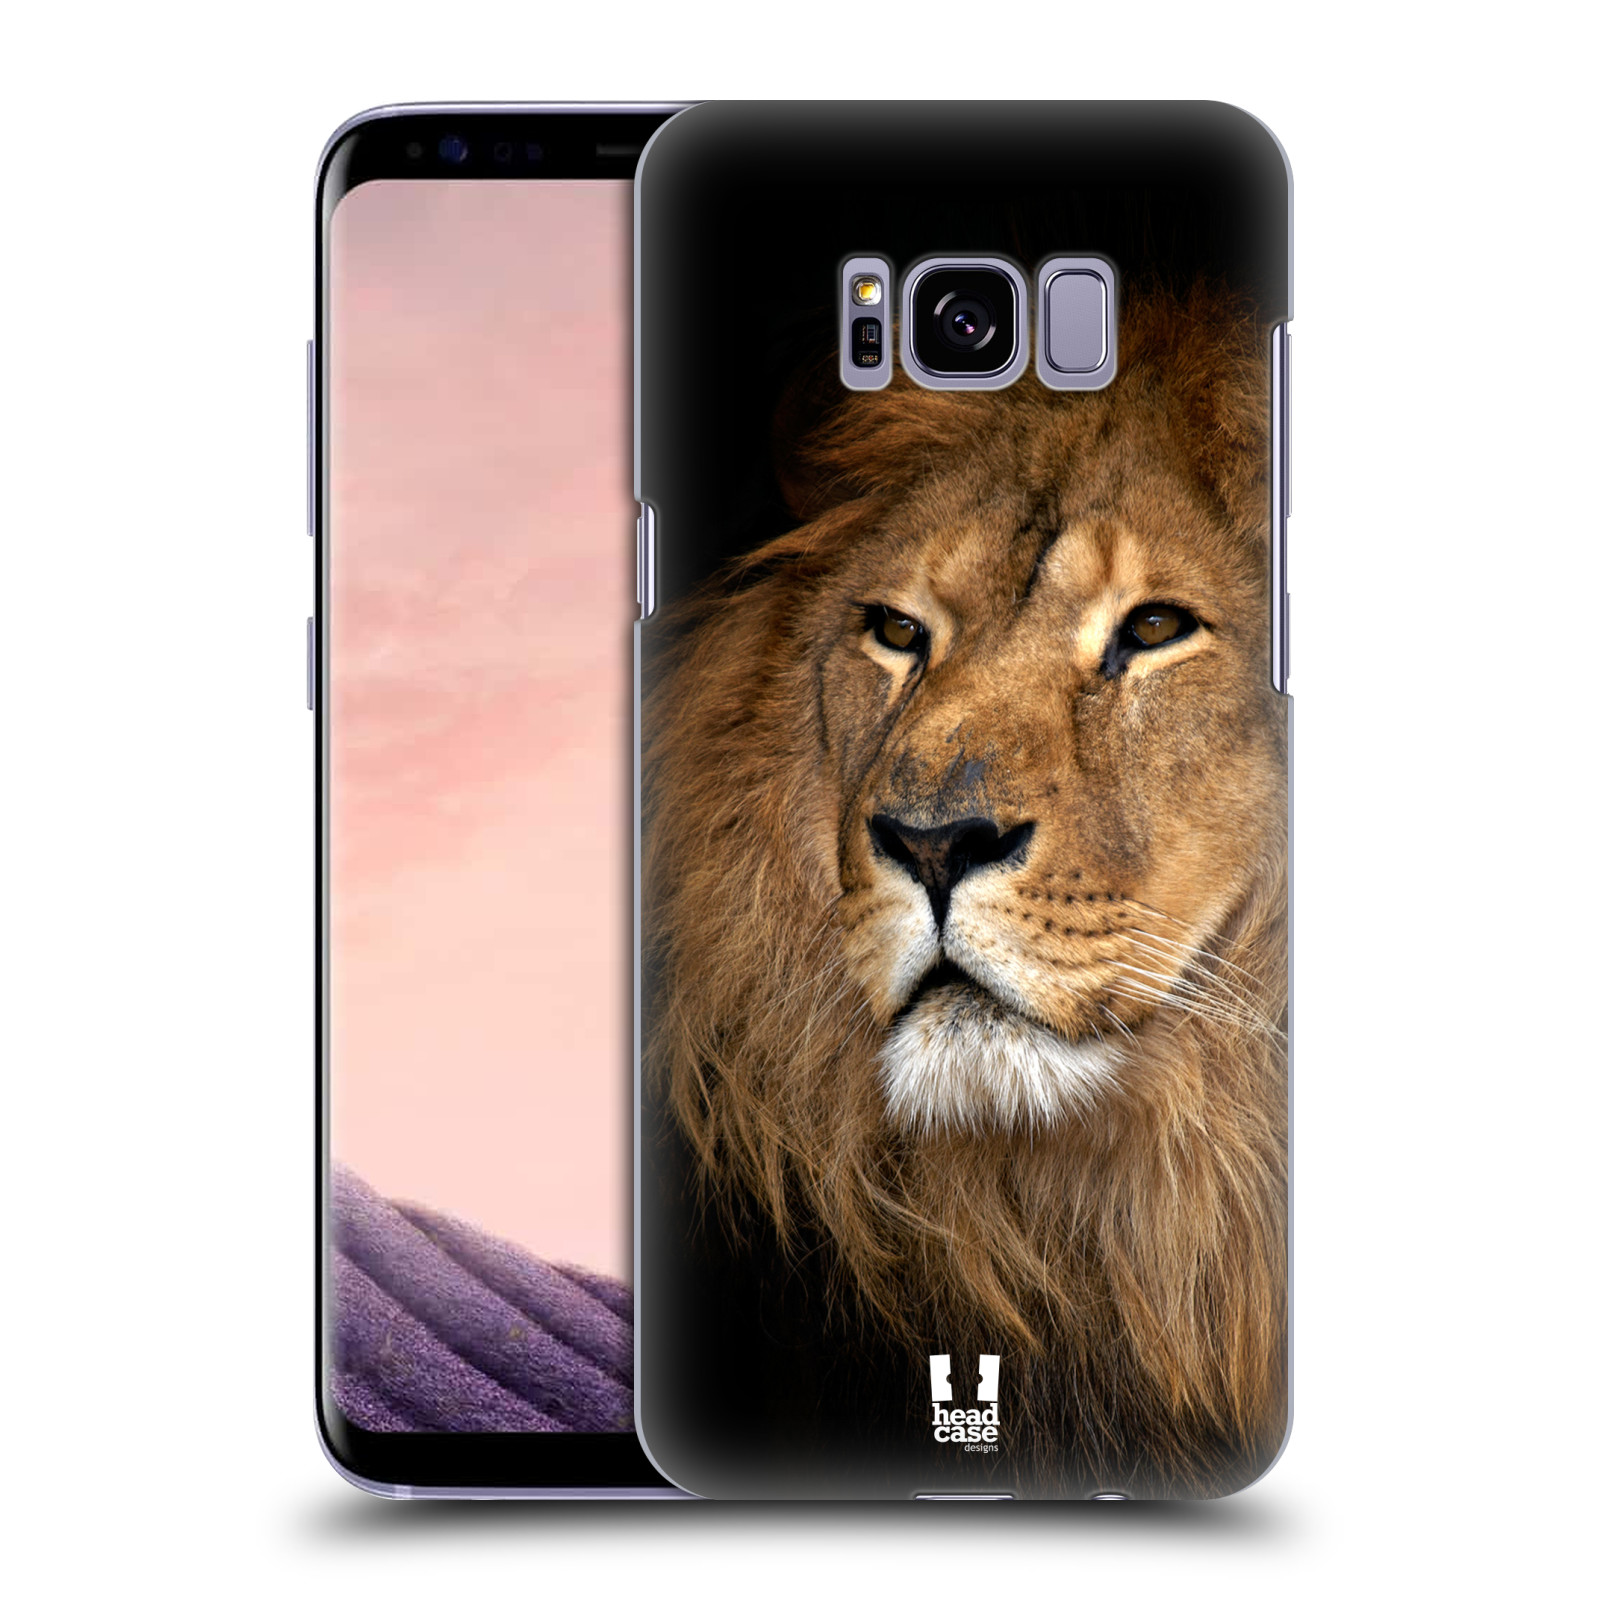 Zadní obal pro mobil Samsung Galaxy S8 PLUS - HEAD CASE - Svět zvířat král zvířat Lev